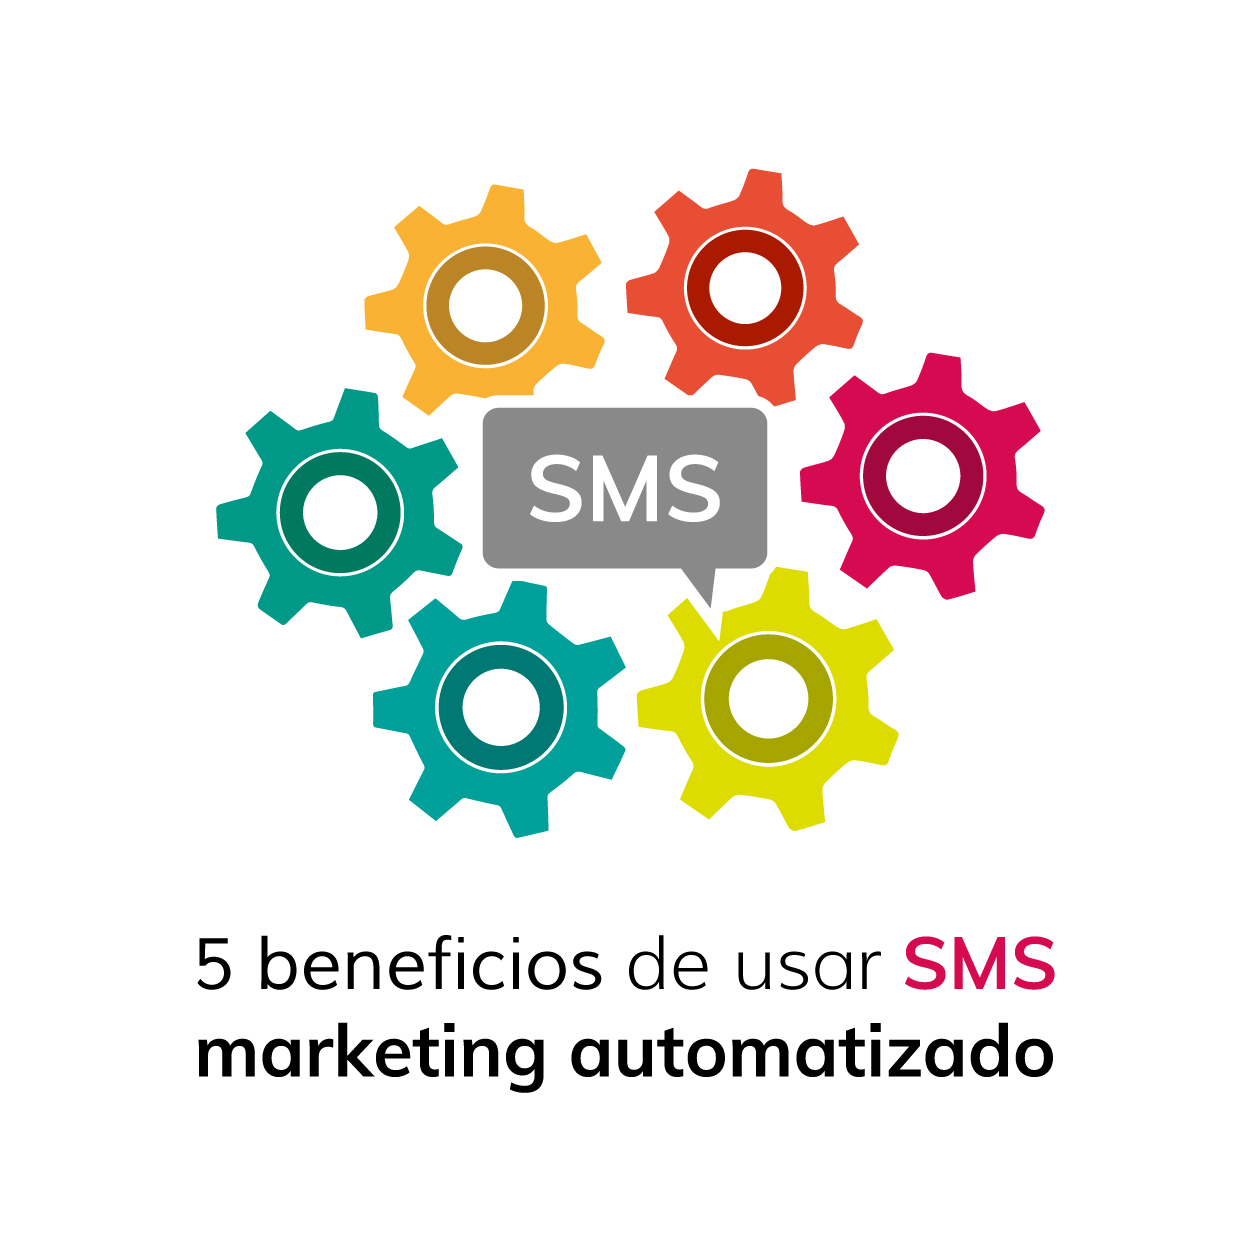 5 beneficios de usar SMS marketing automatizado